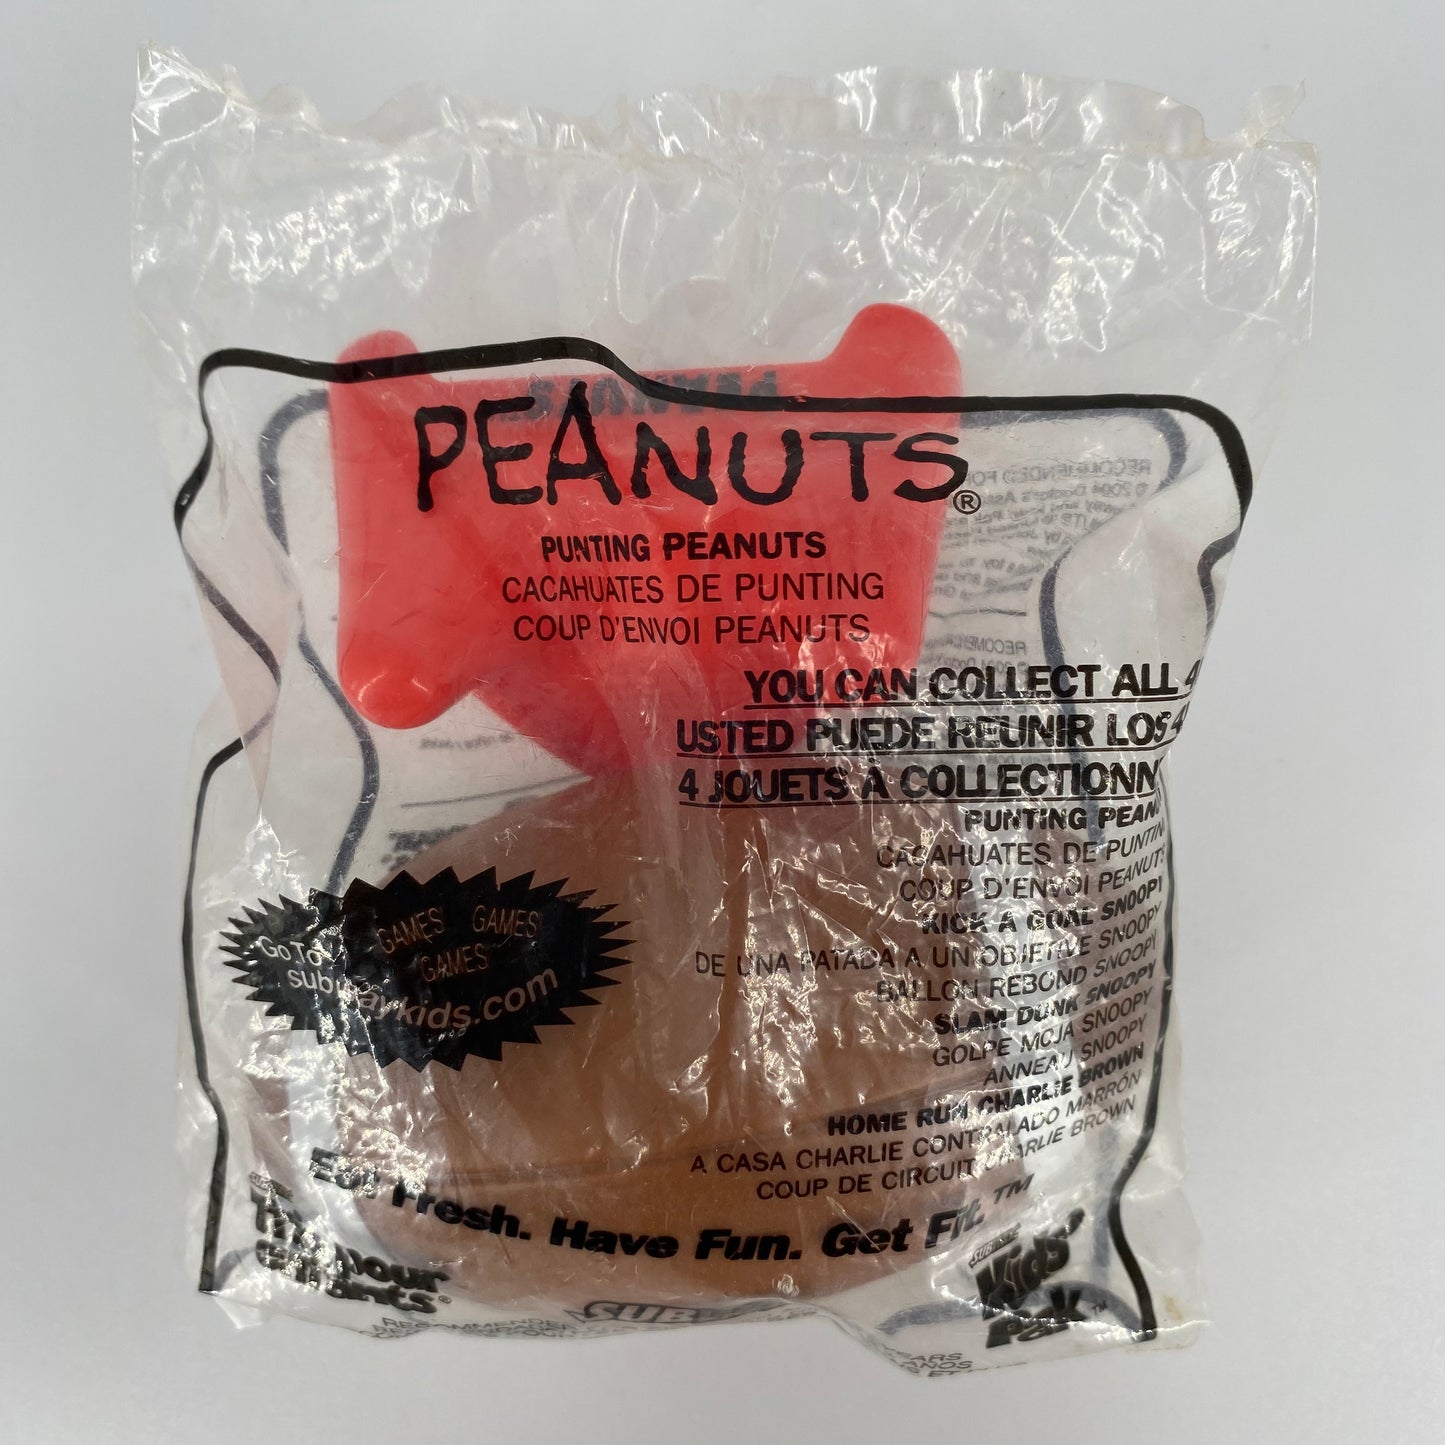 Peanuts Punting Peanuts football Subway Kids' Pak toy (2004) bagged